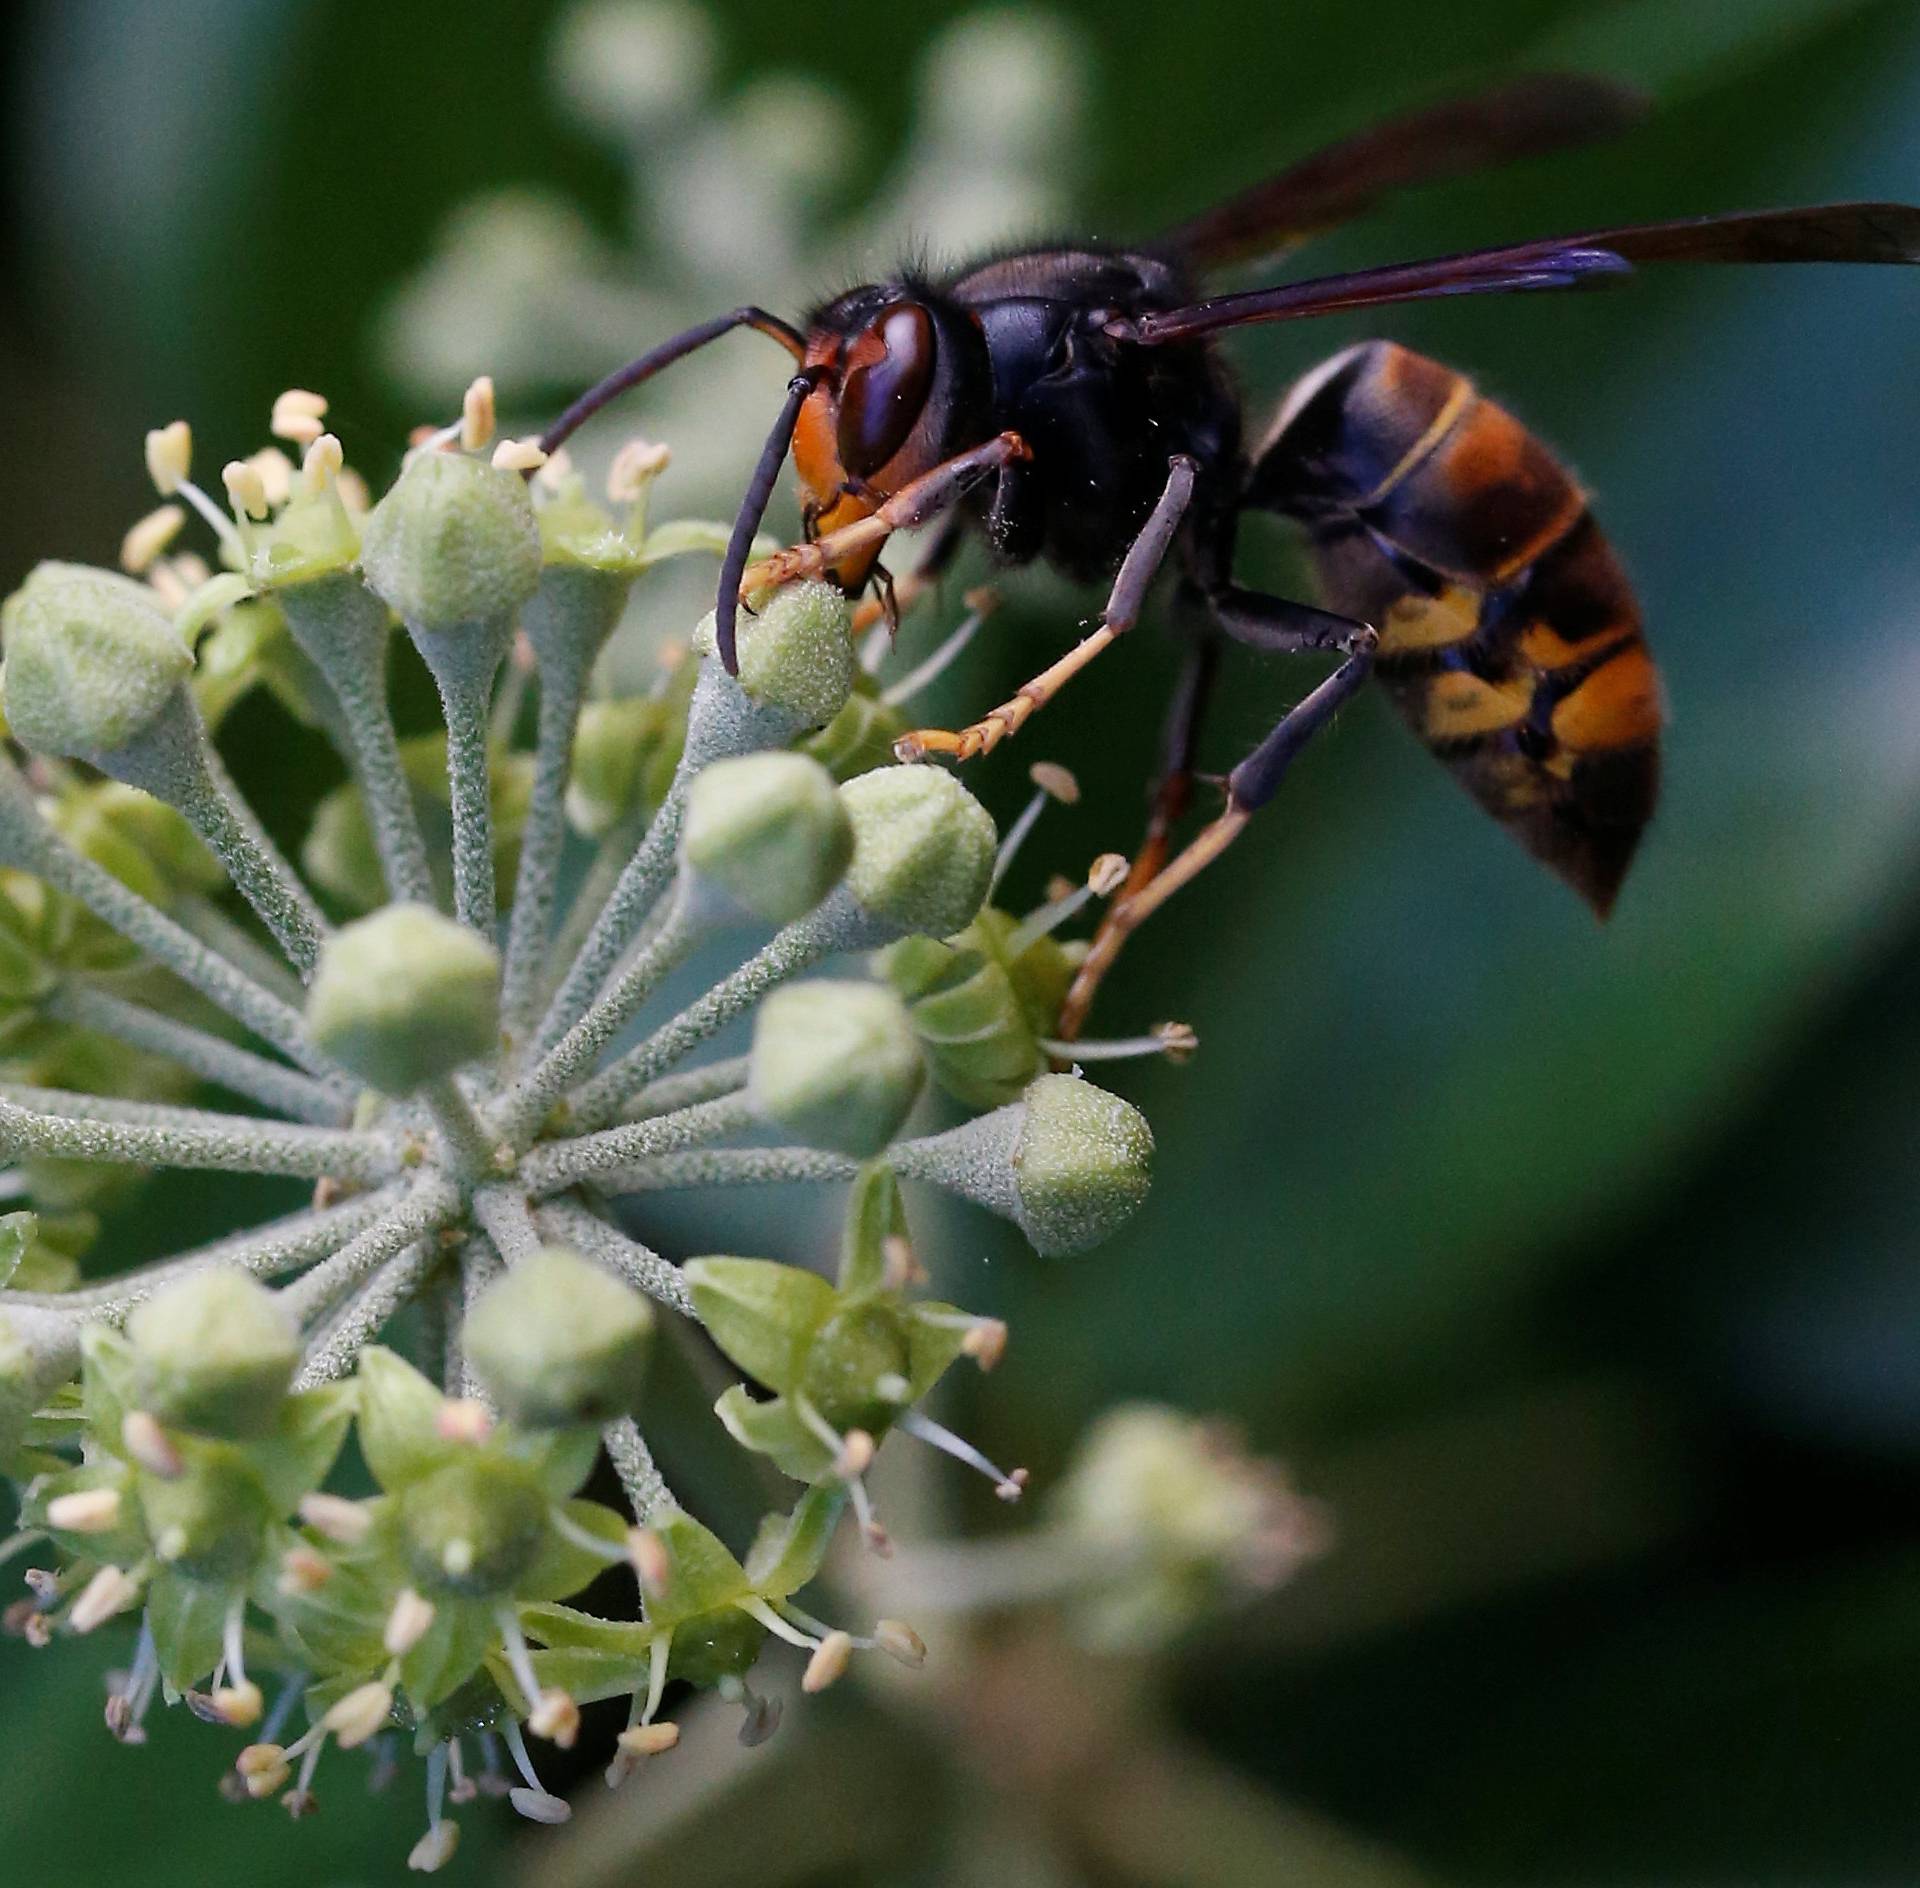 An Asian hornet, Latin name "Vespa Velutina", is seen in Vertou